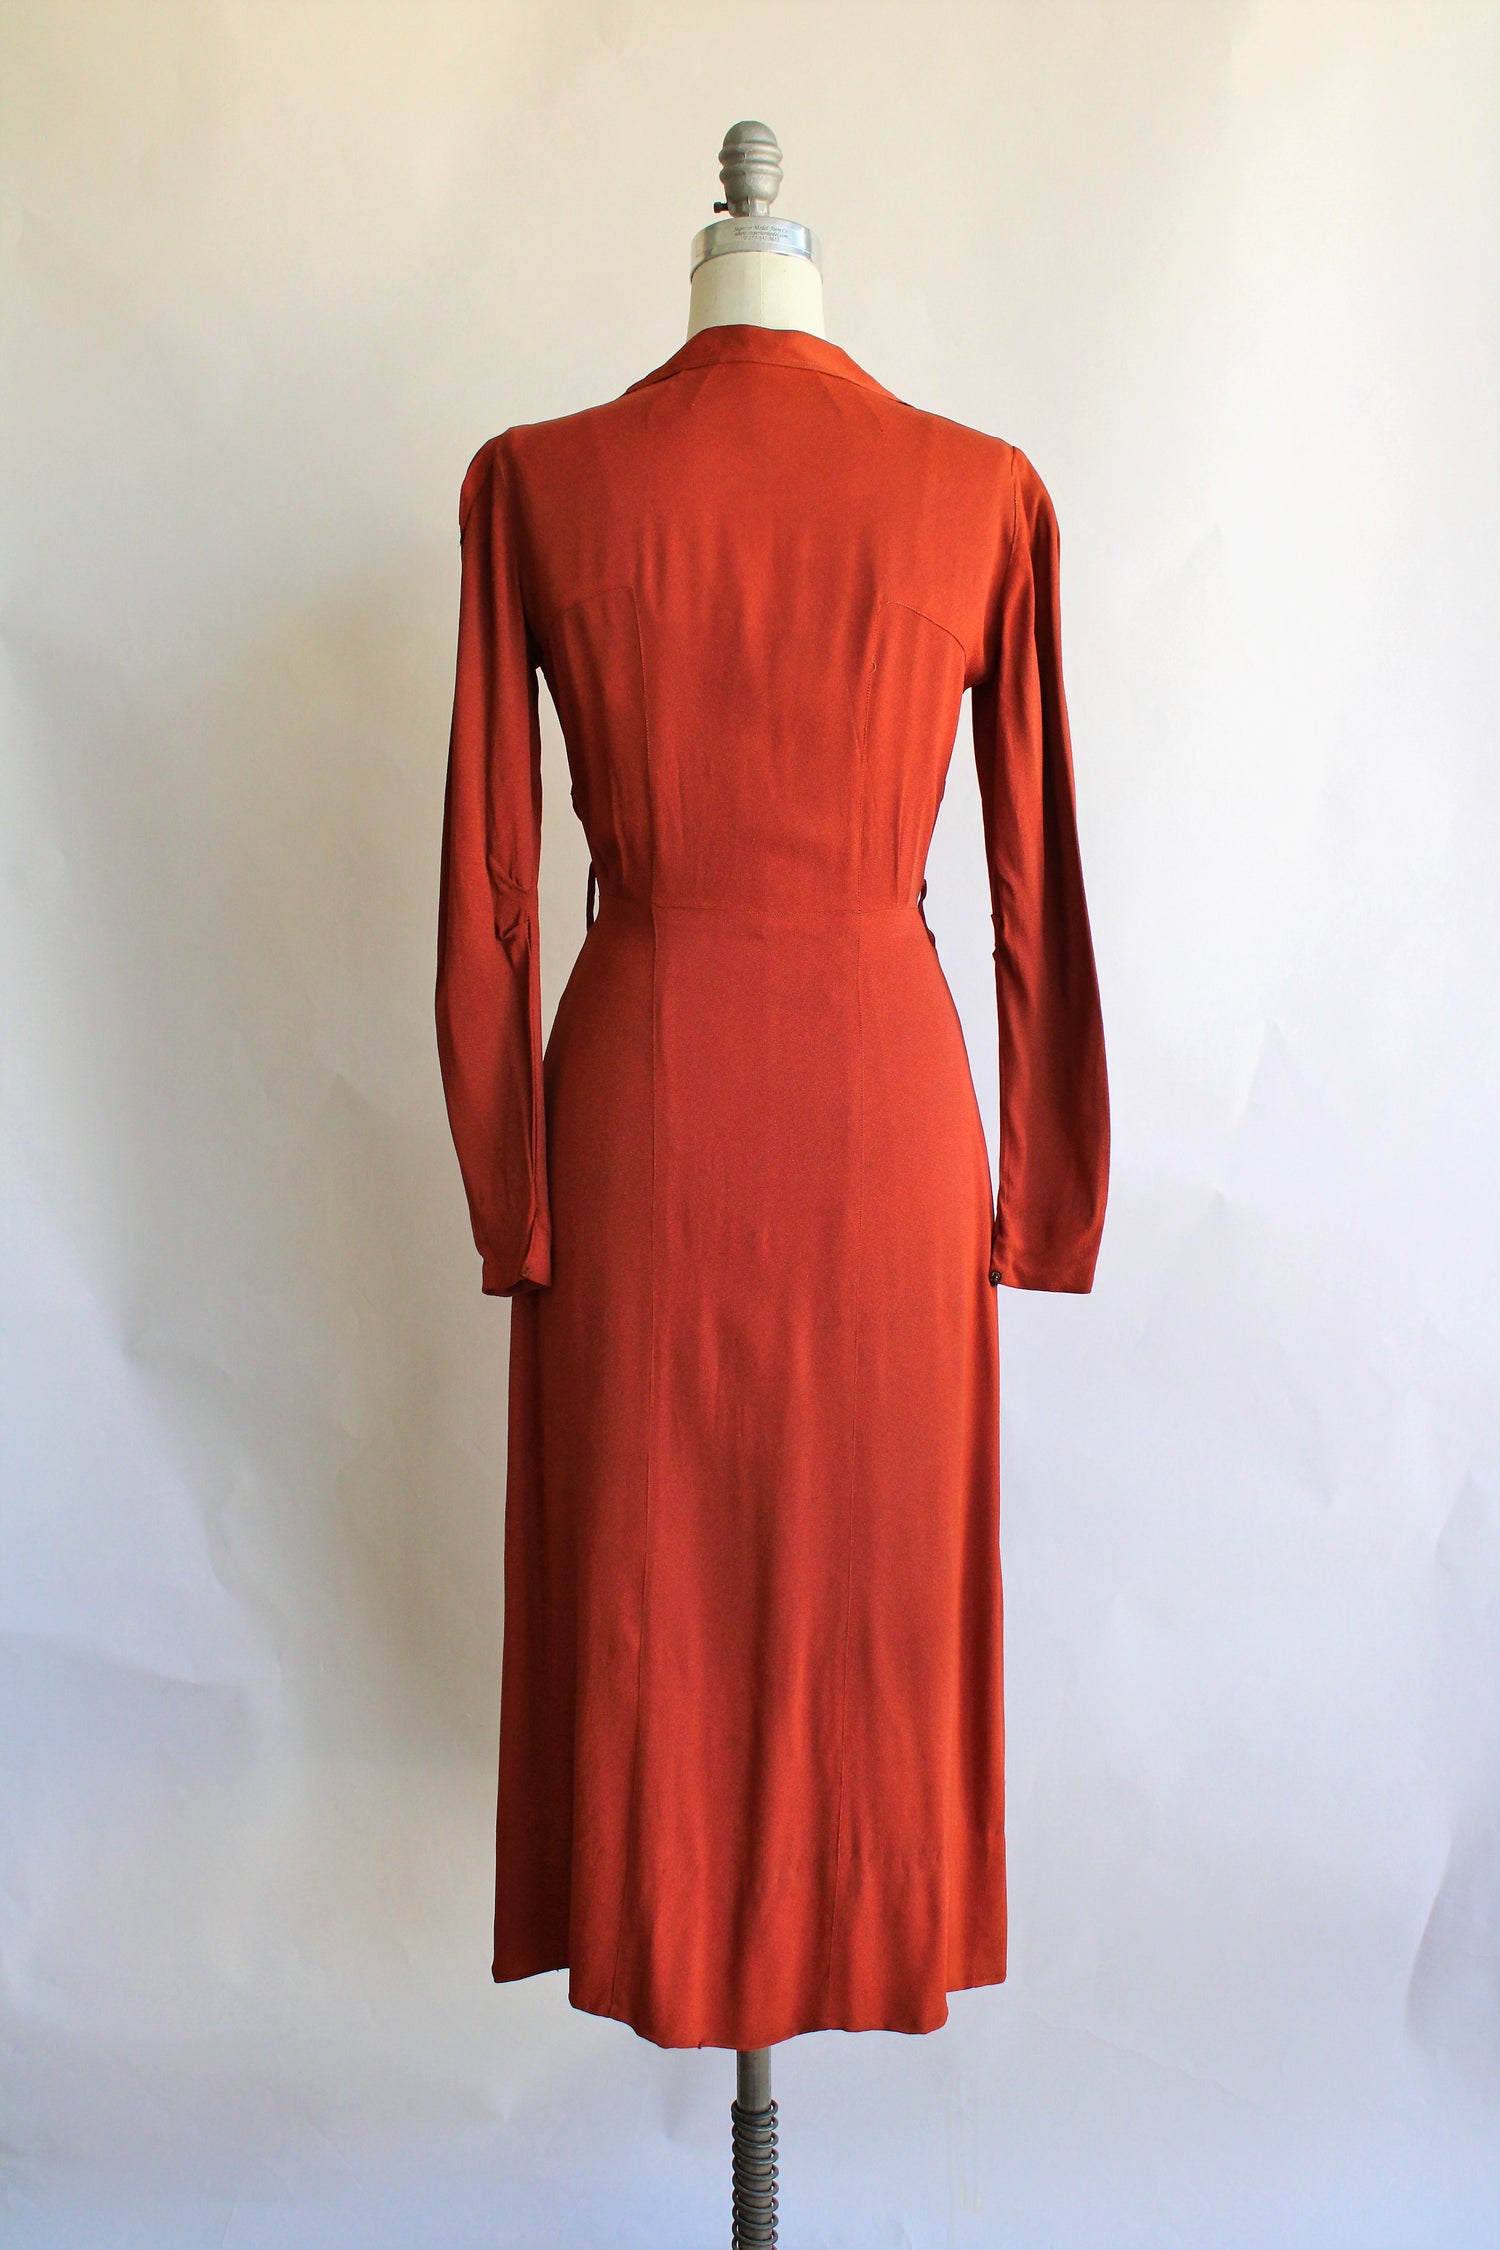 Vintage 1940s Rust Orange Rayon Dress